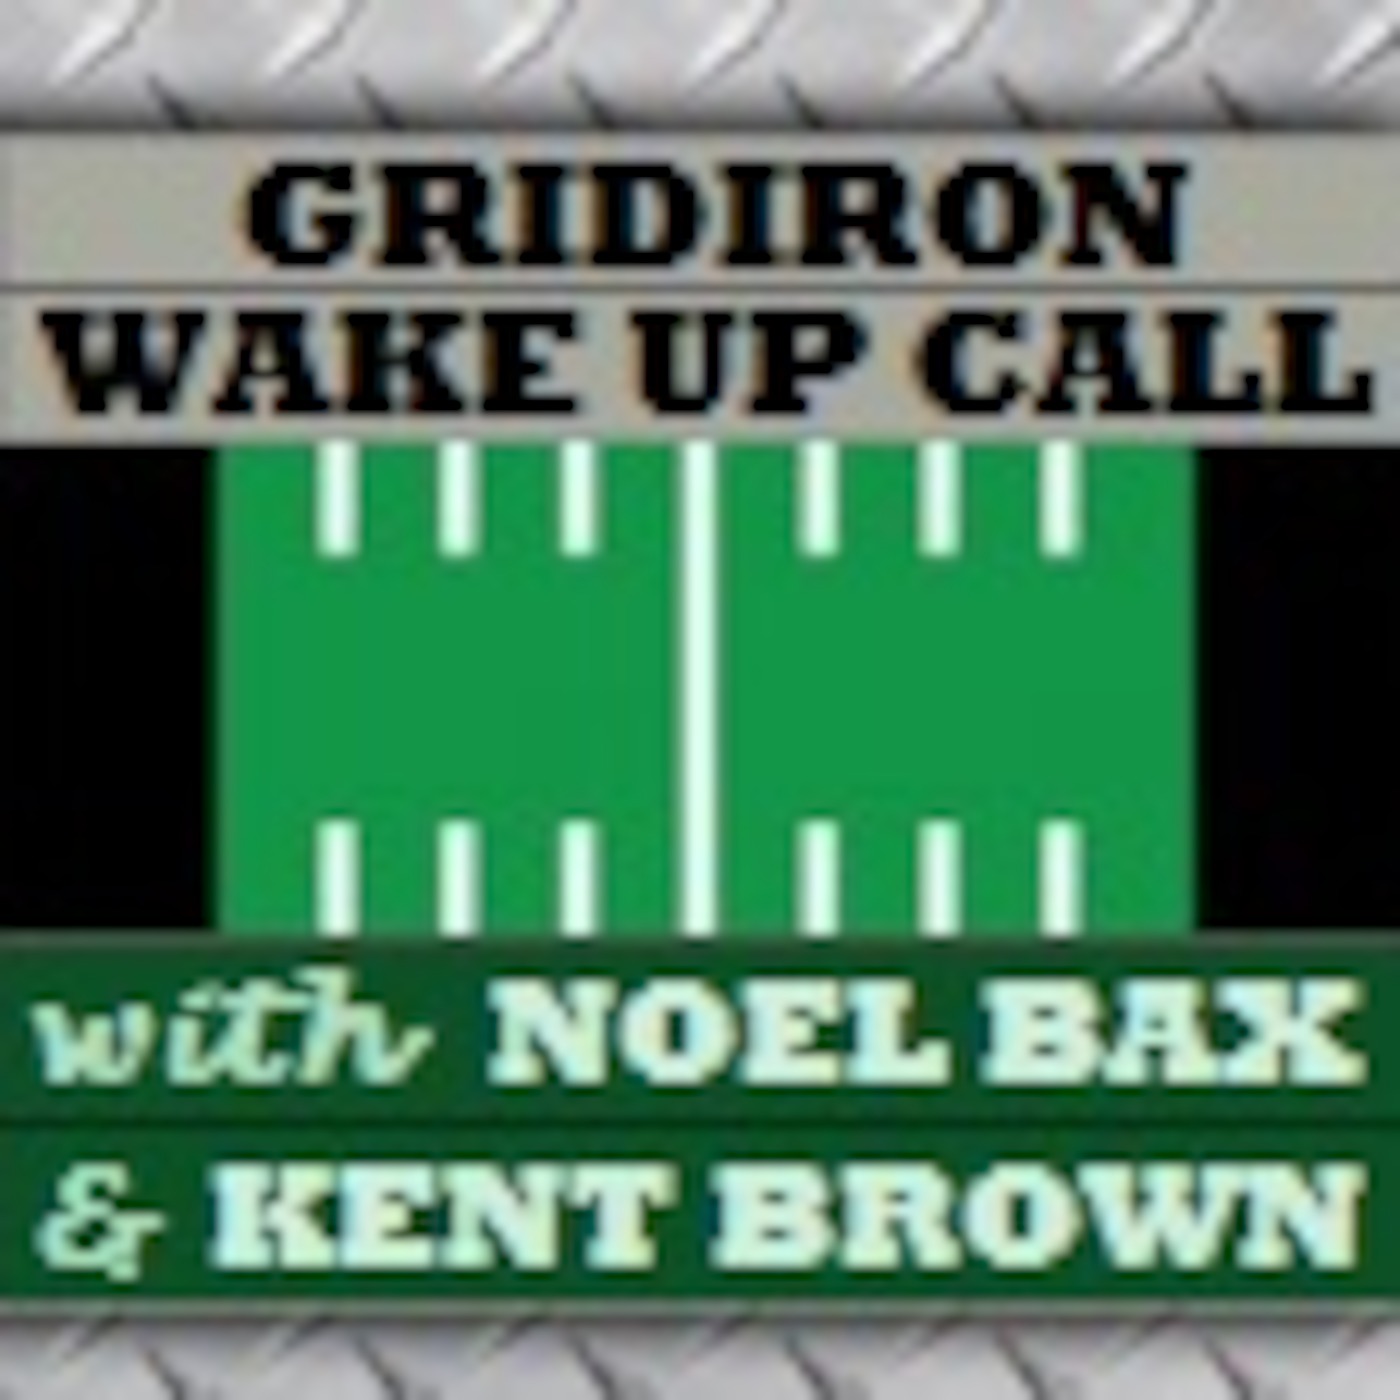 Gridiron Wake Up Call